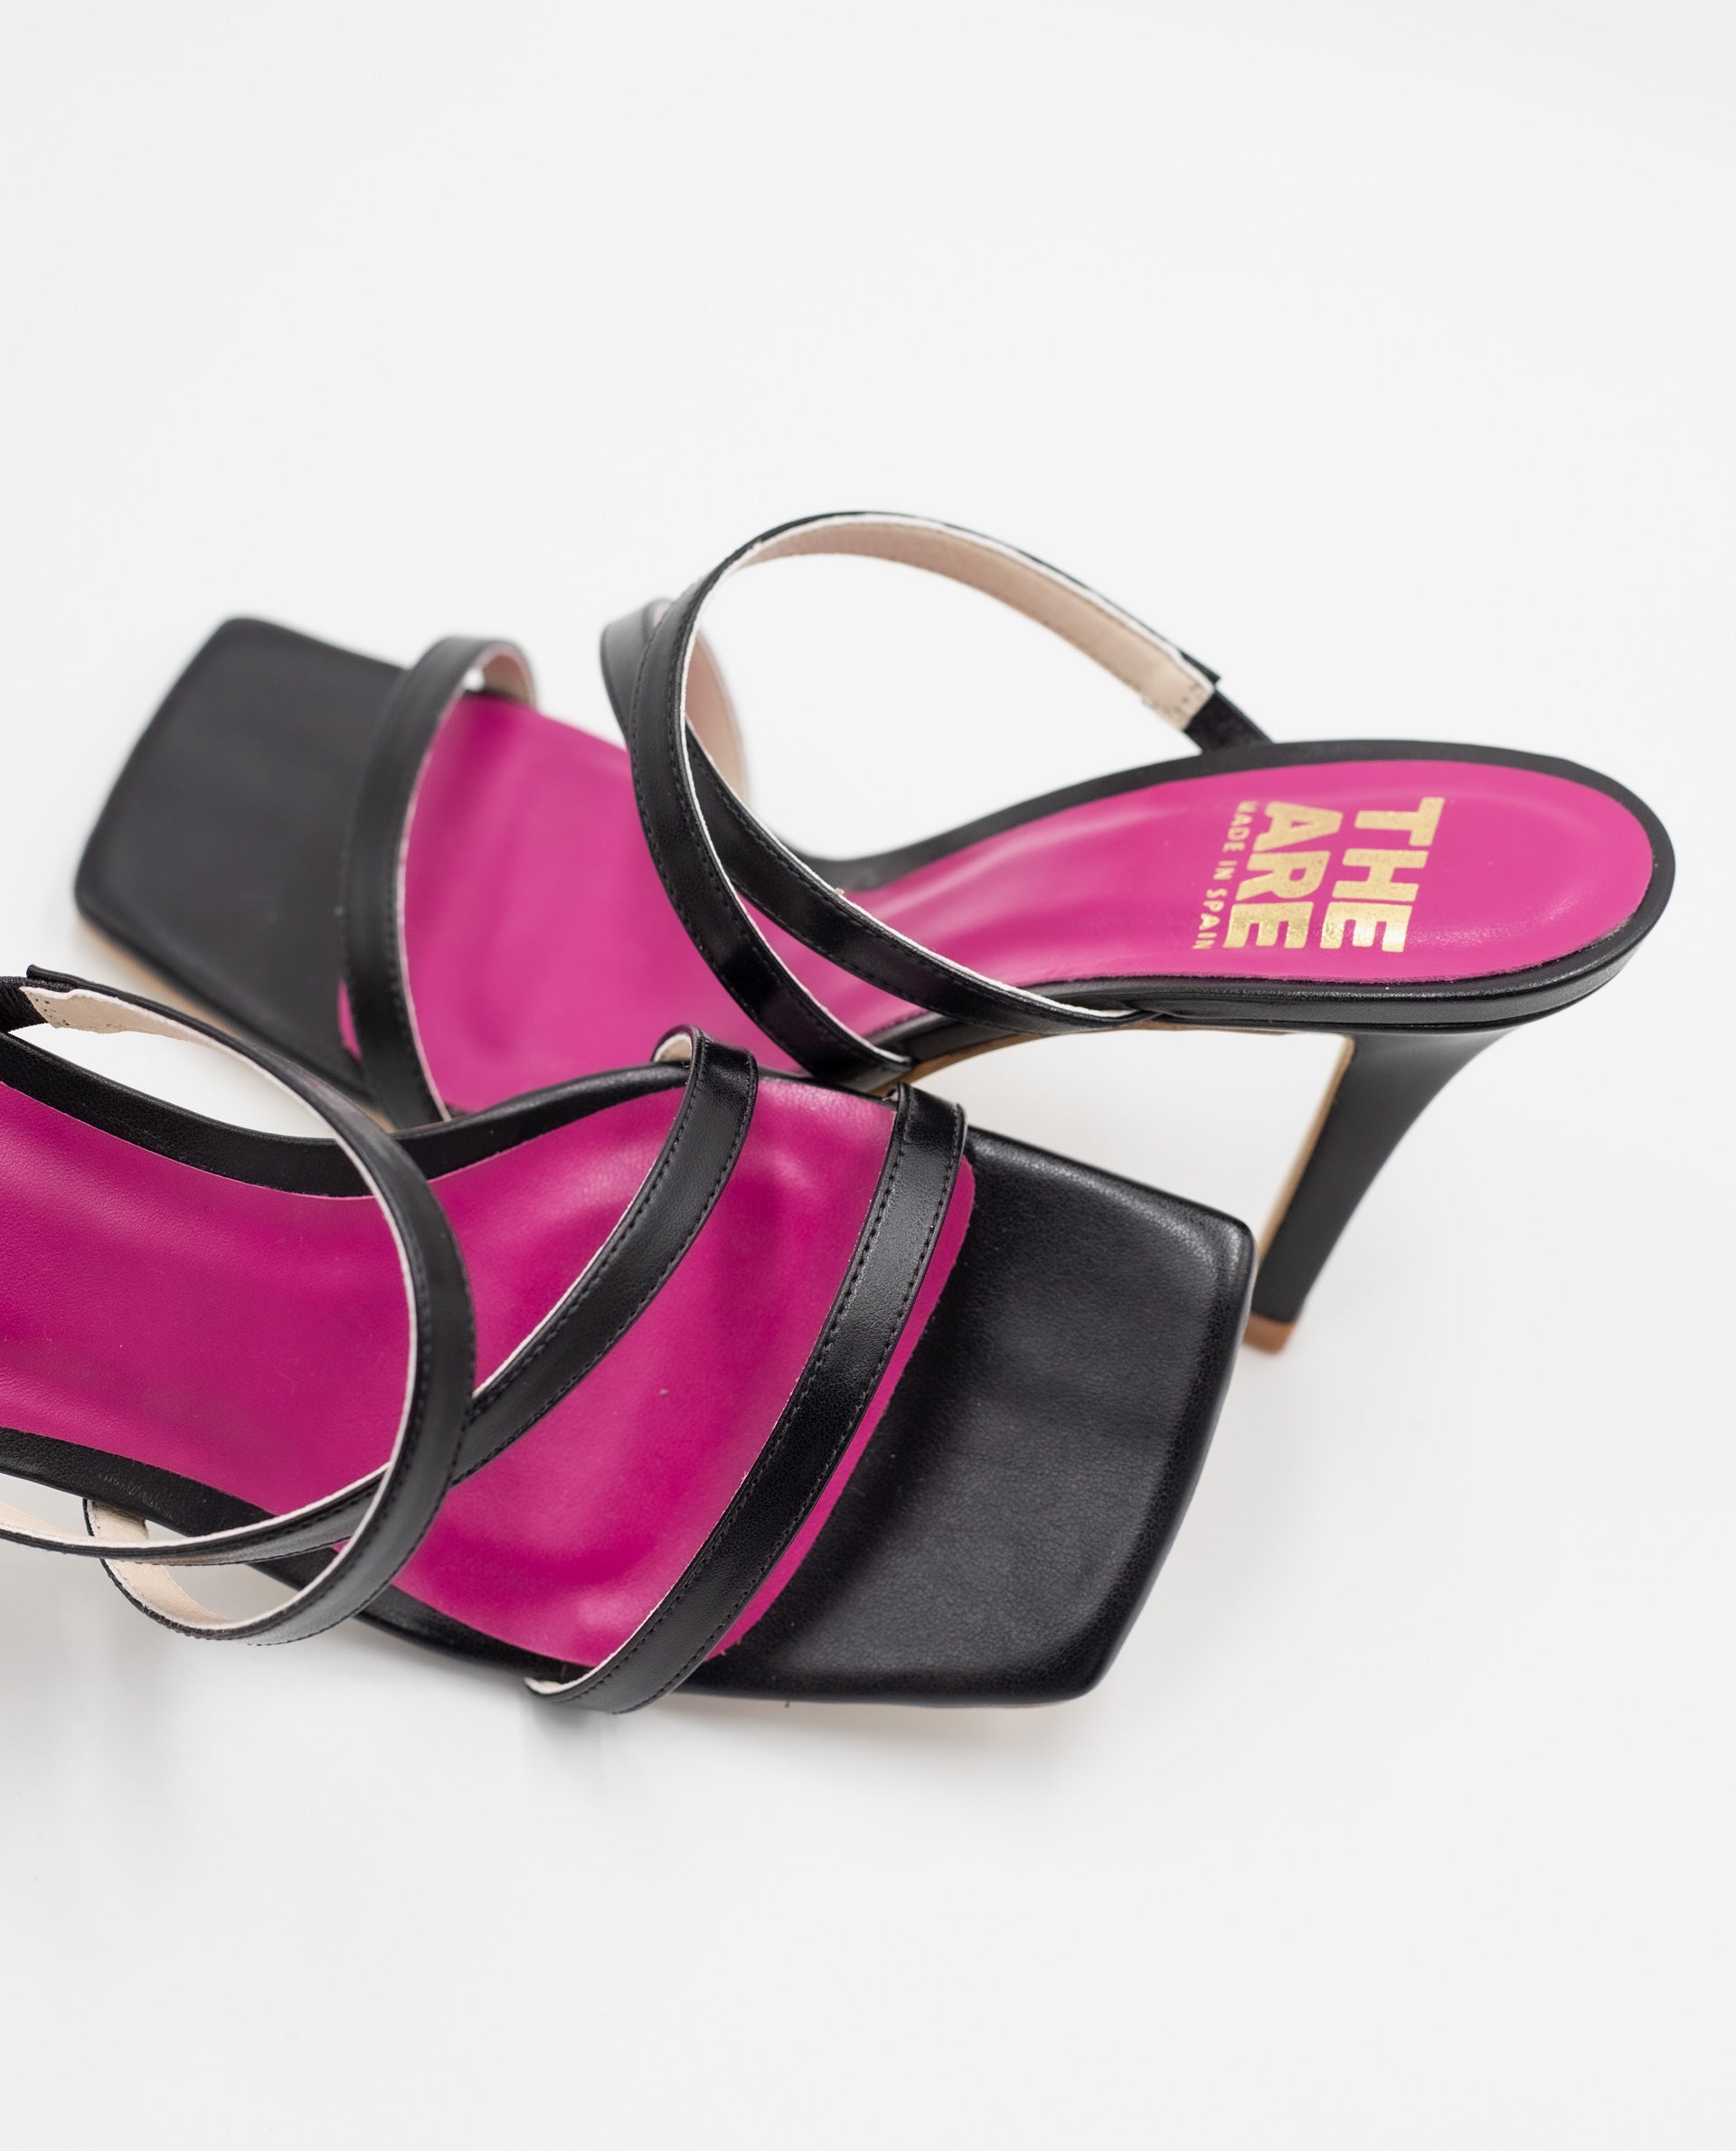 SANDALIA #3 | Sandalia de Tacón Negro con Plataforma | Zapatos THE-ARE